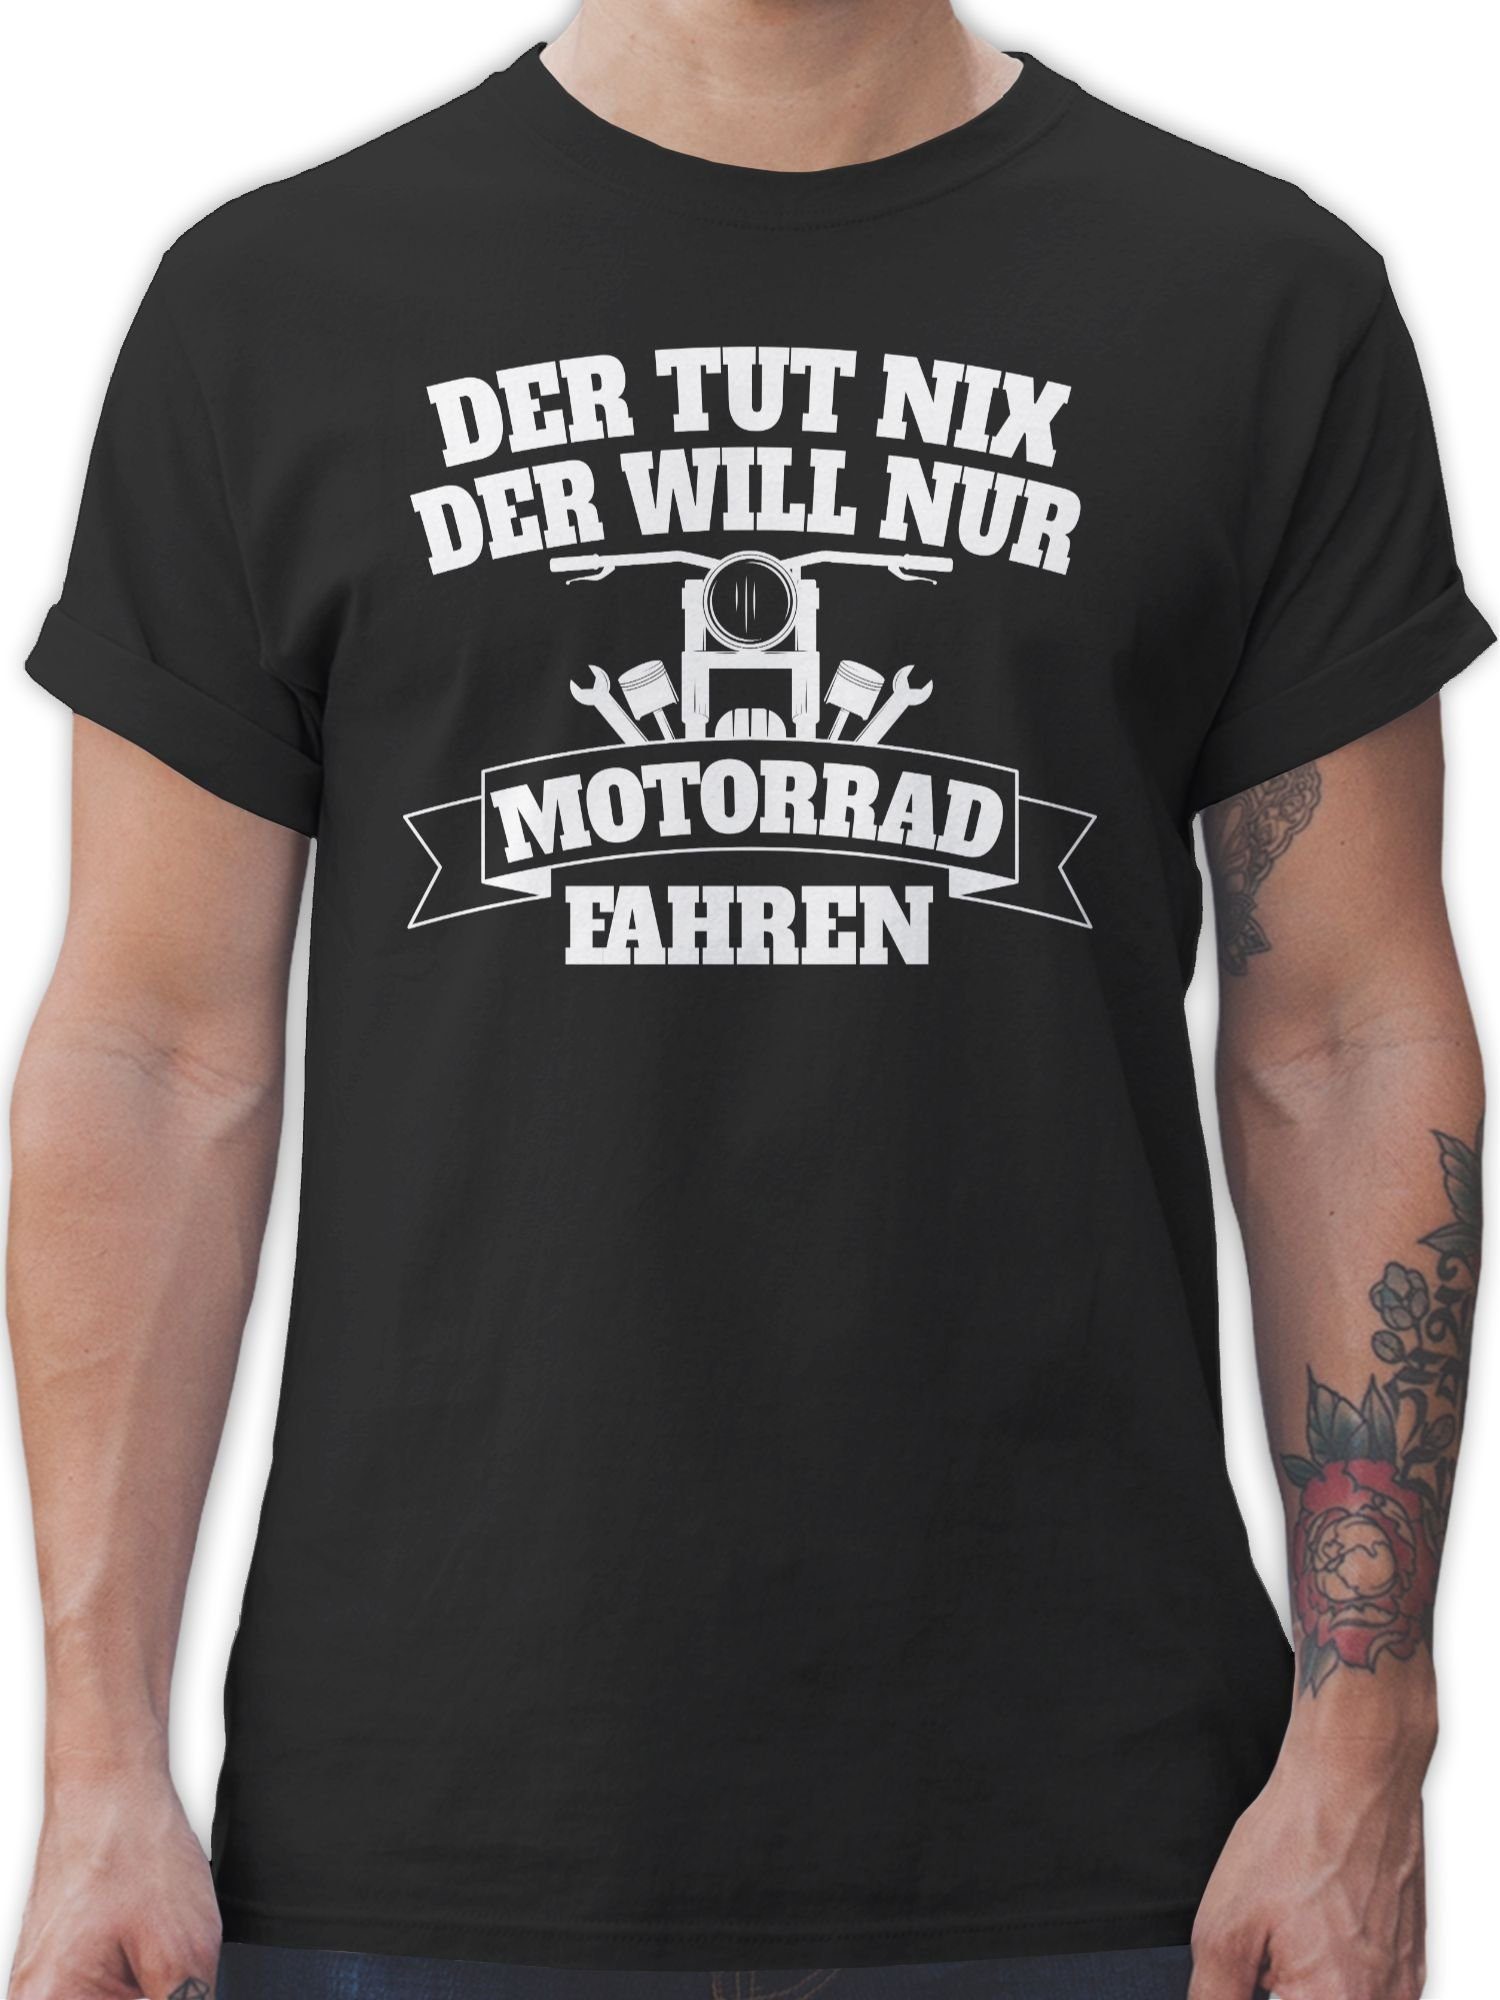 Shirtracer T-Shirt Der Motorrad nix nur tut Biker der will 1 Schwarz fahren Motorrad